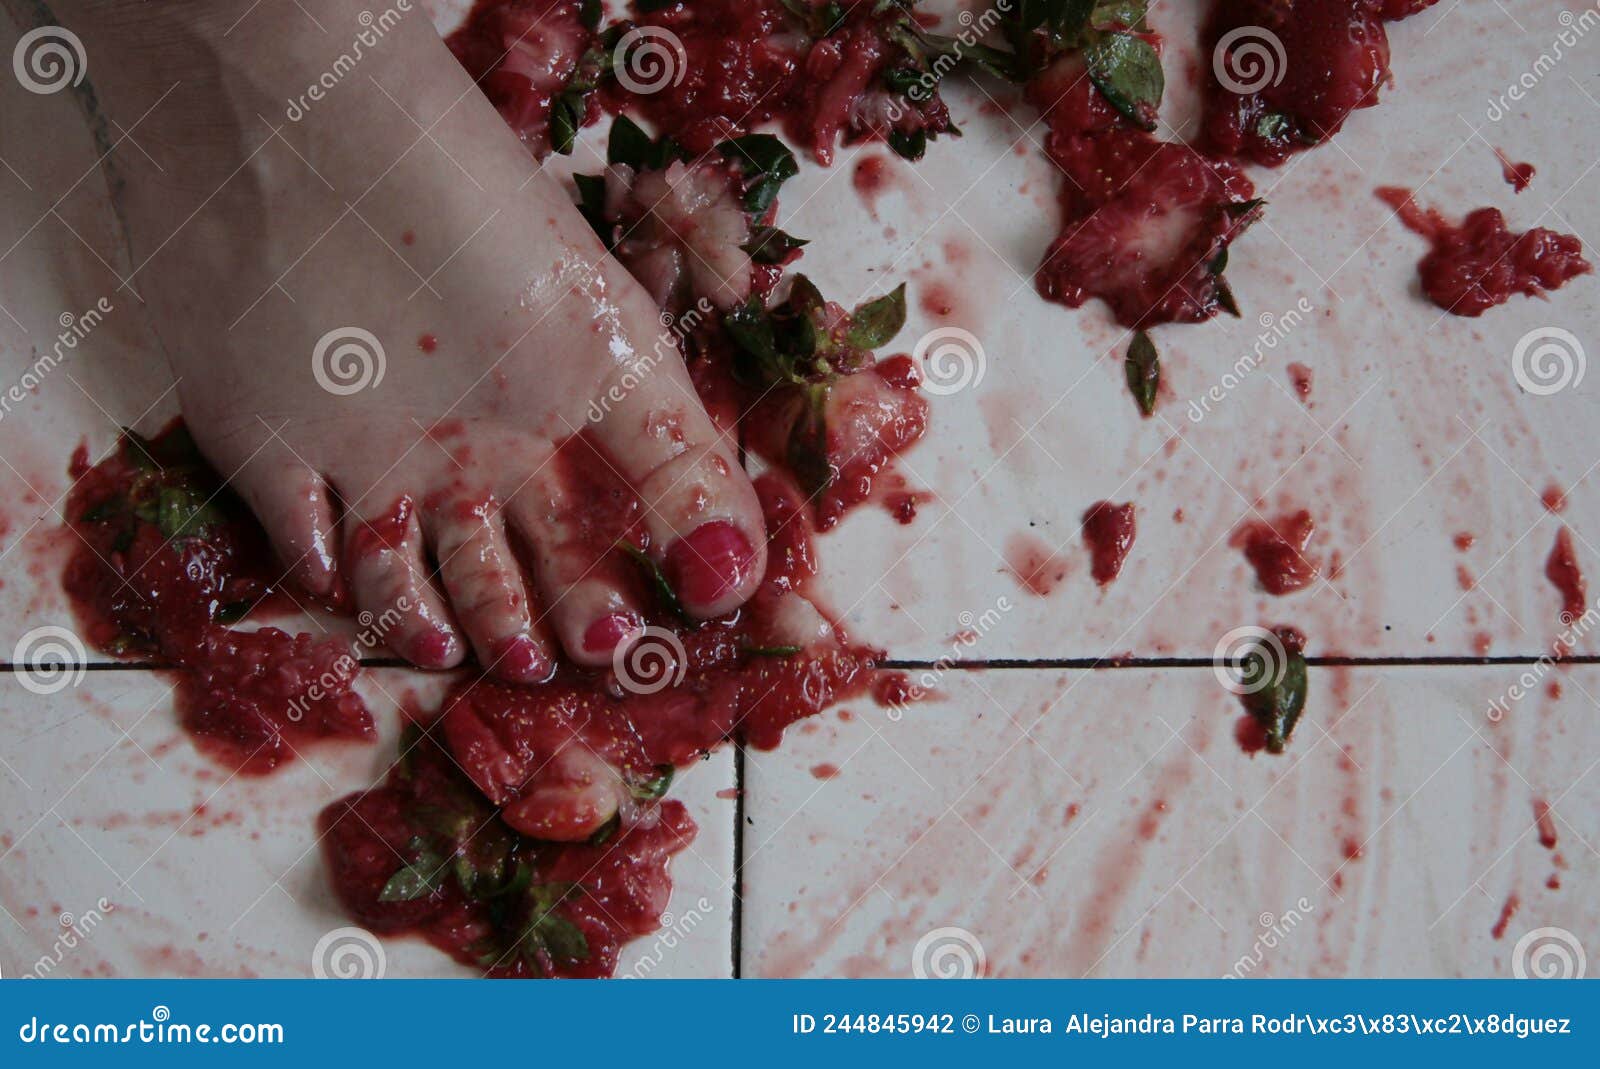 foot mashed strawberries on a white floor fresas machacadas con el pie en un piso blanco